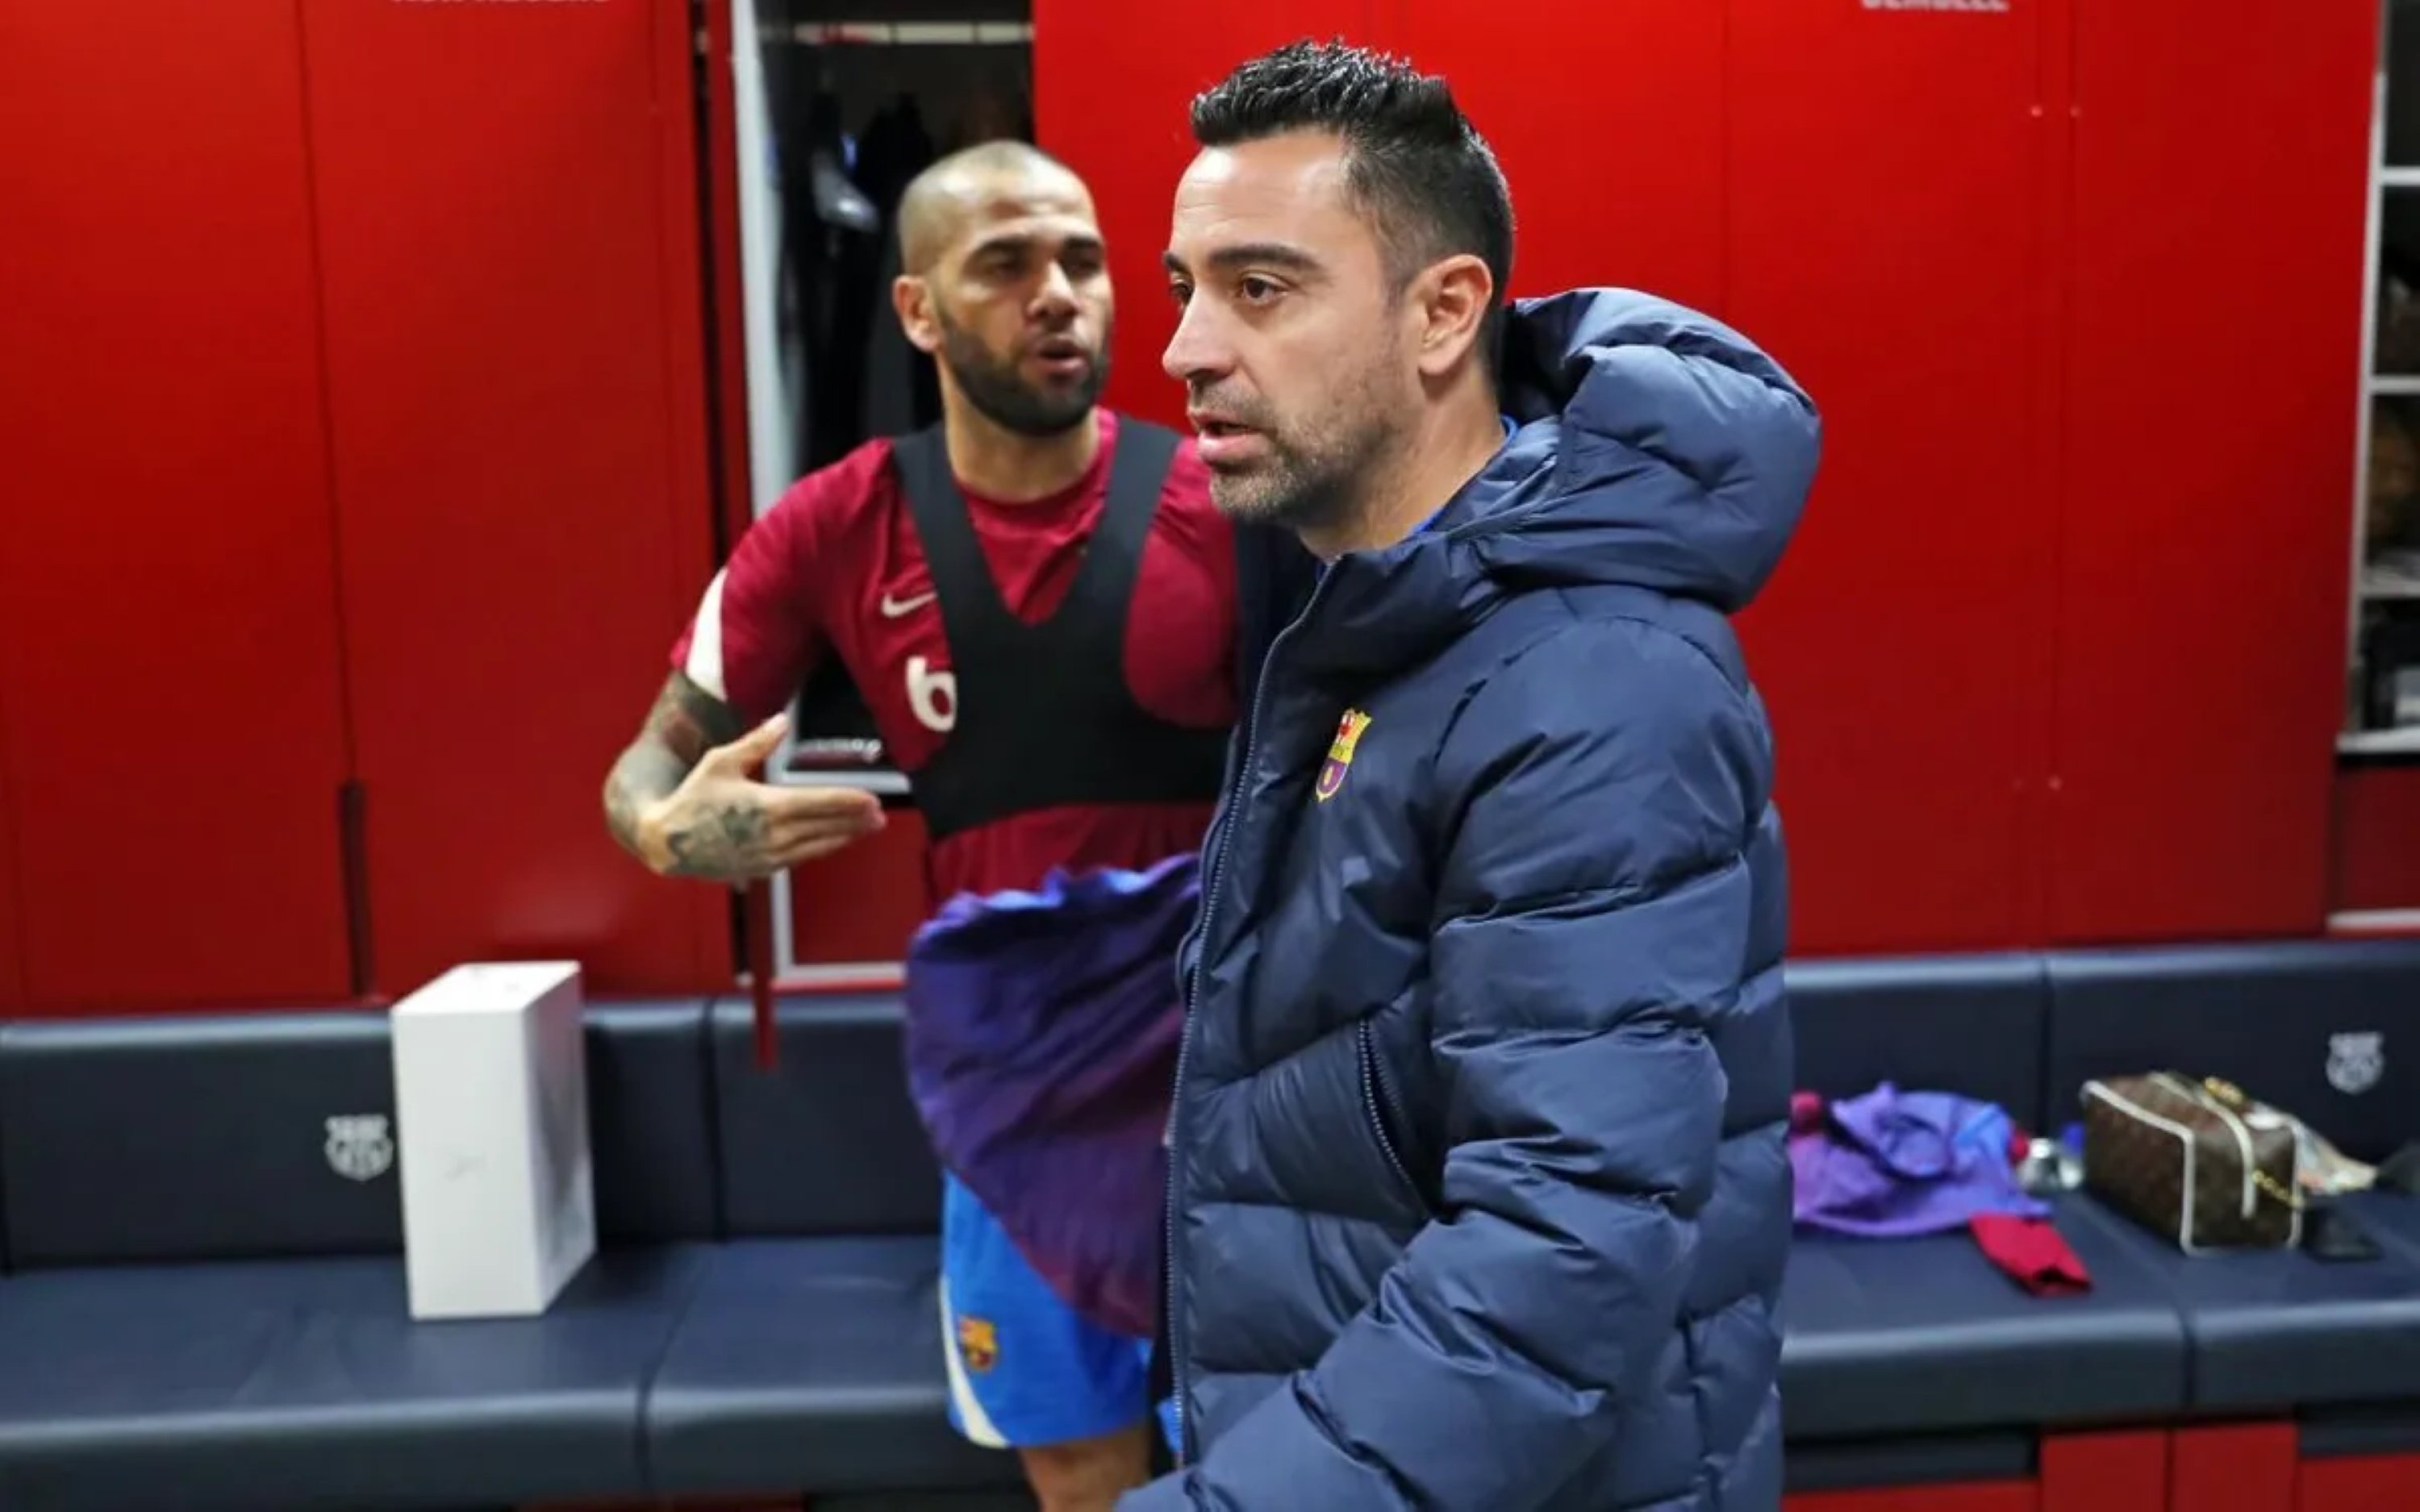 Va jugar amb Dani Alves i Xavi Hernández al Barça i ara sona com a fitxatge sorpresa per al gener